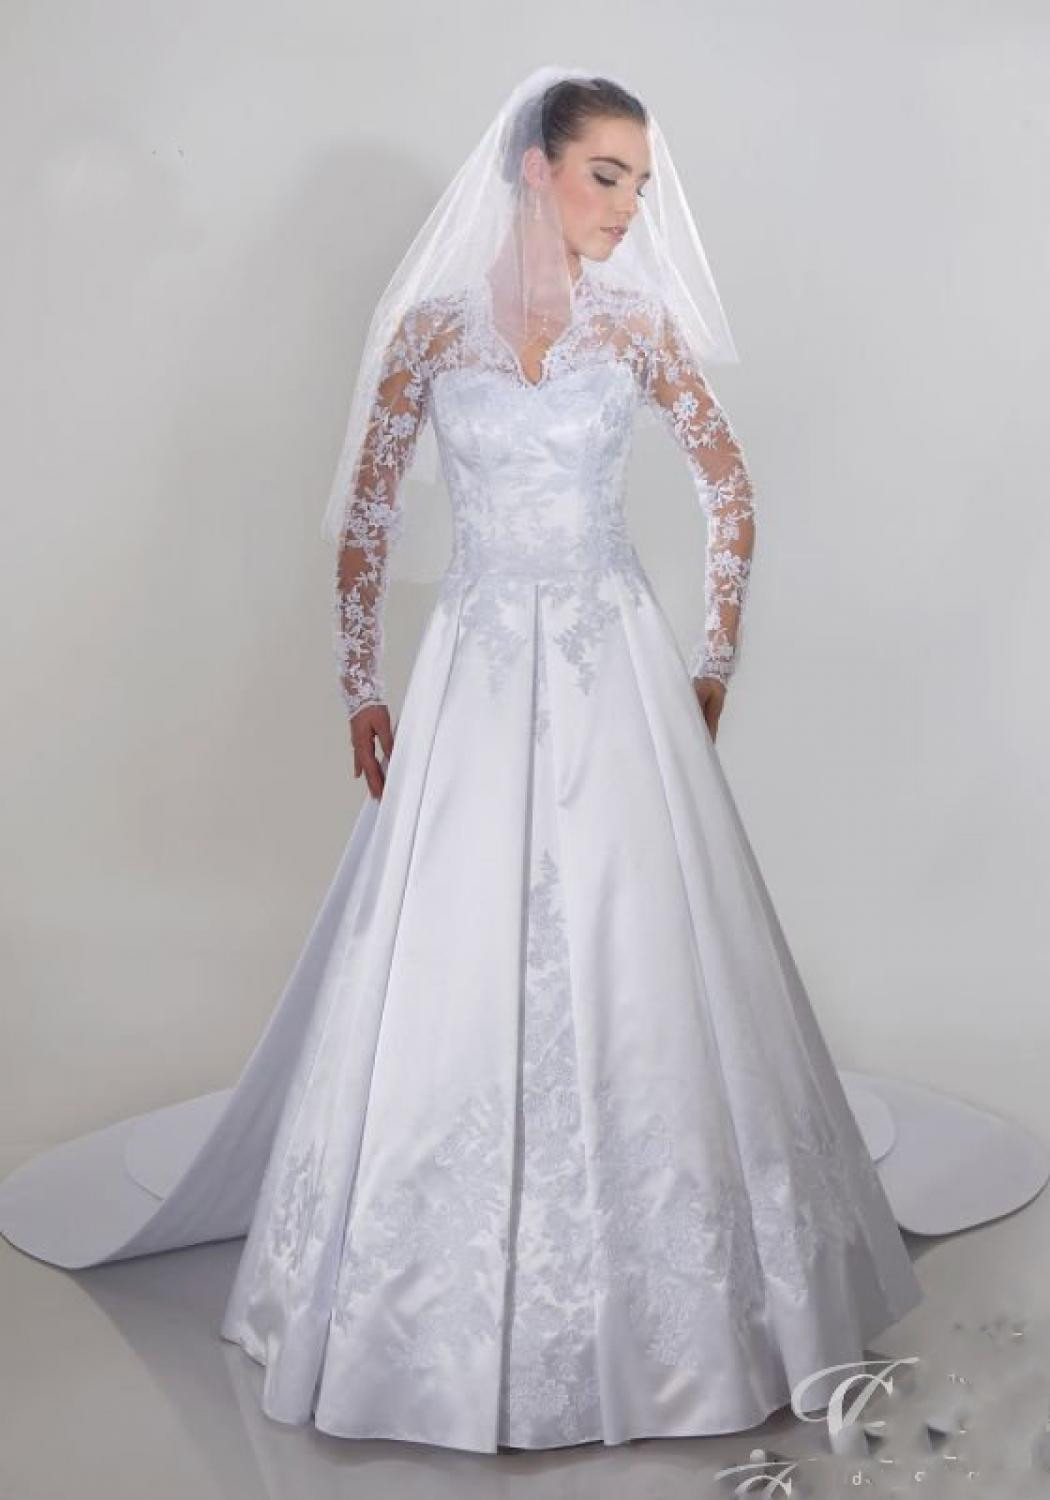 Hochzeitskleid Ärmel
 Brautkleid abnehmbare Schleppe und lange Ärmel